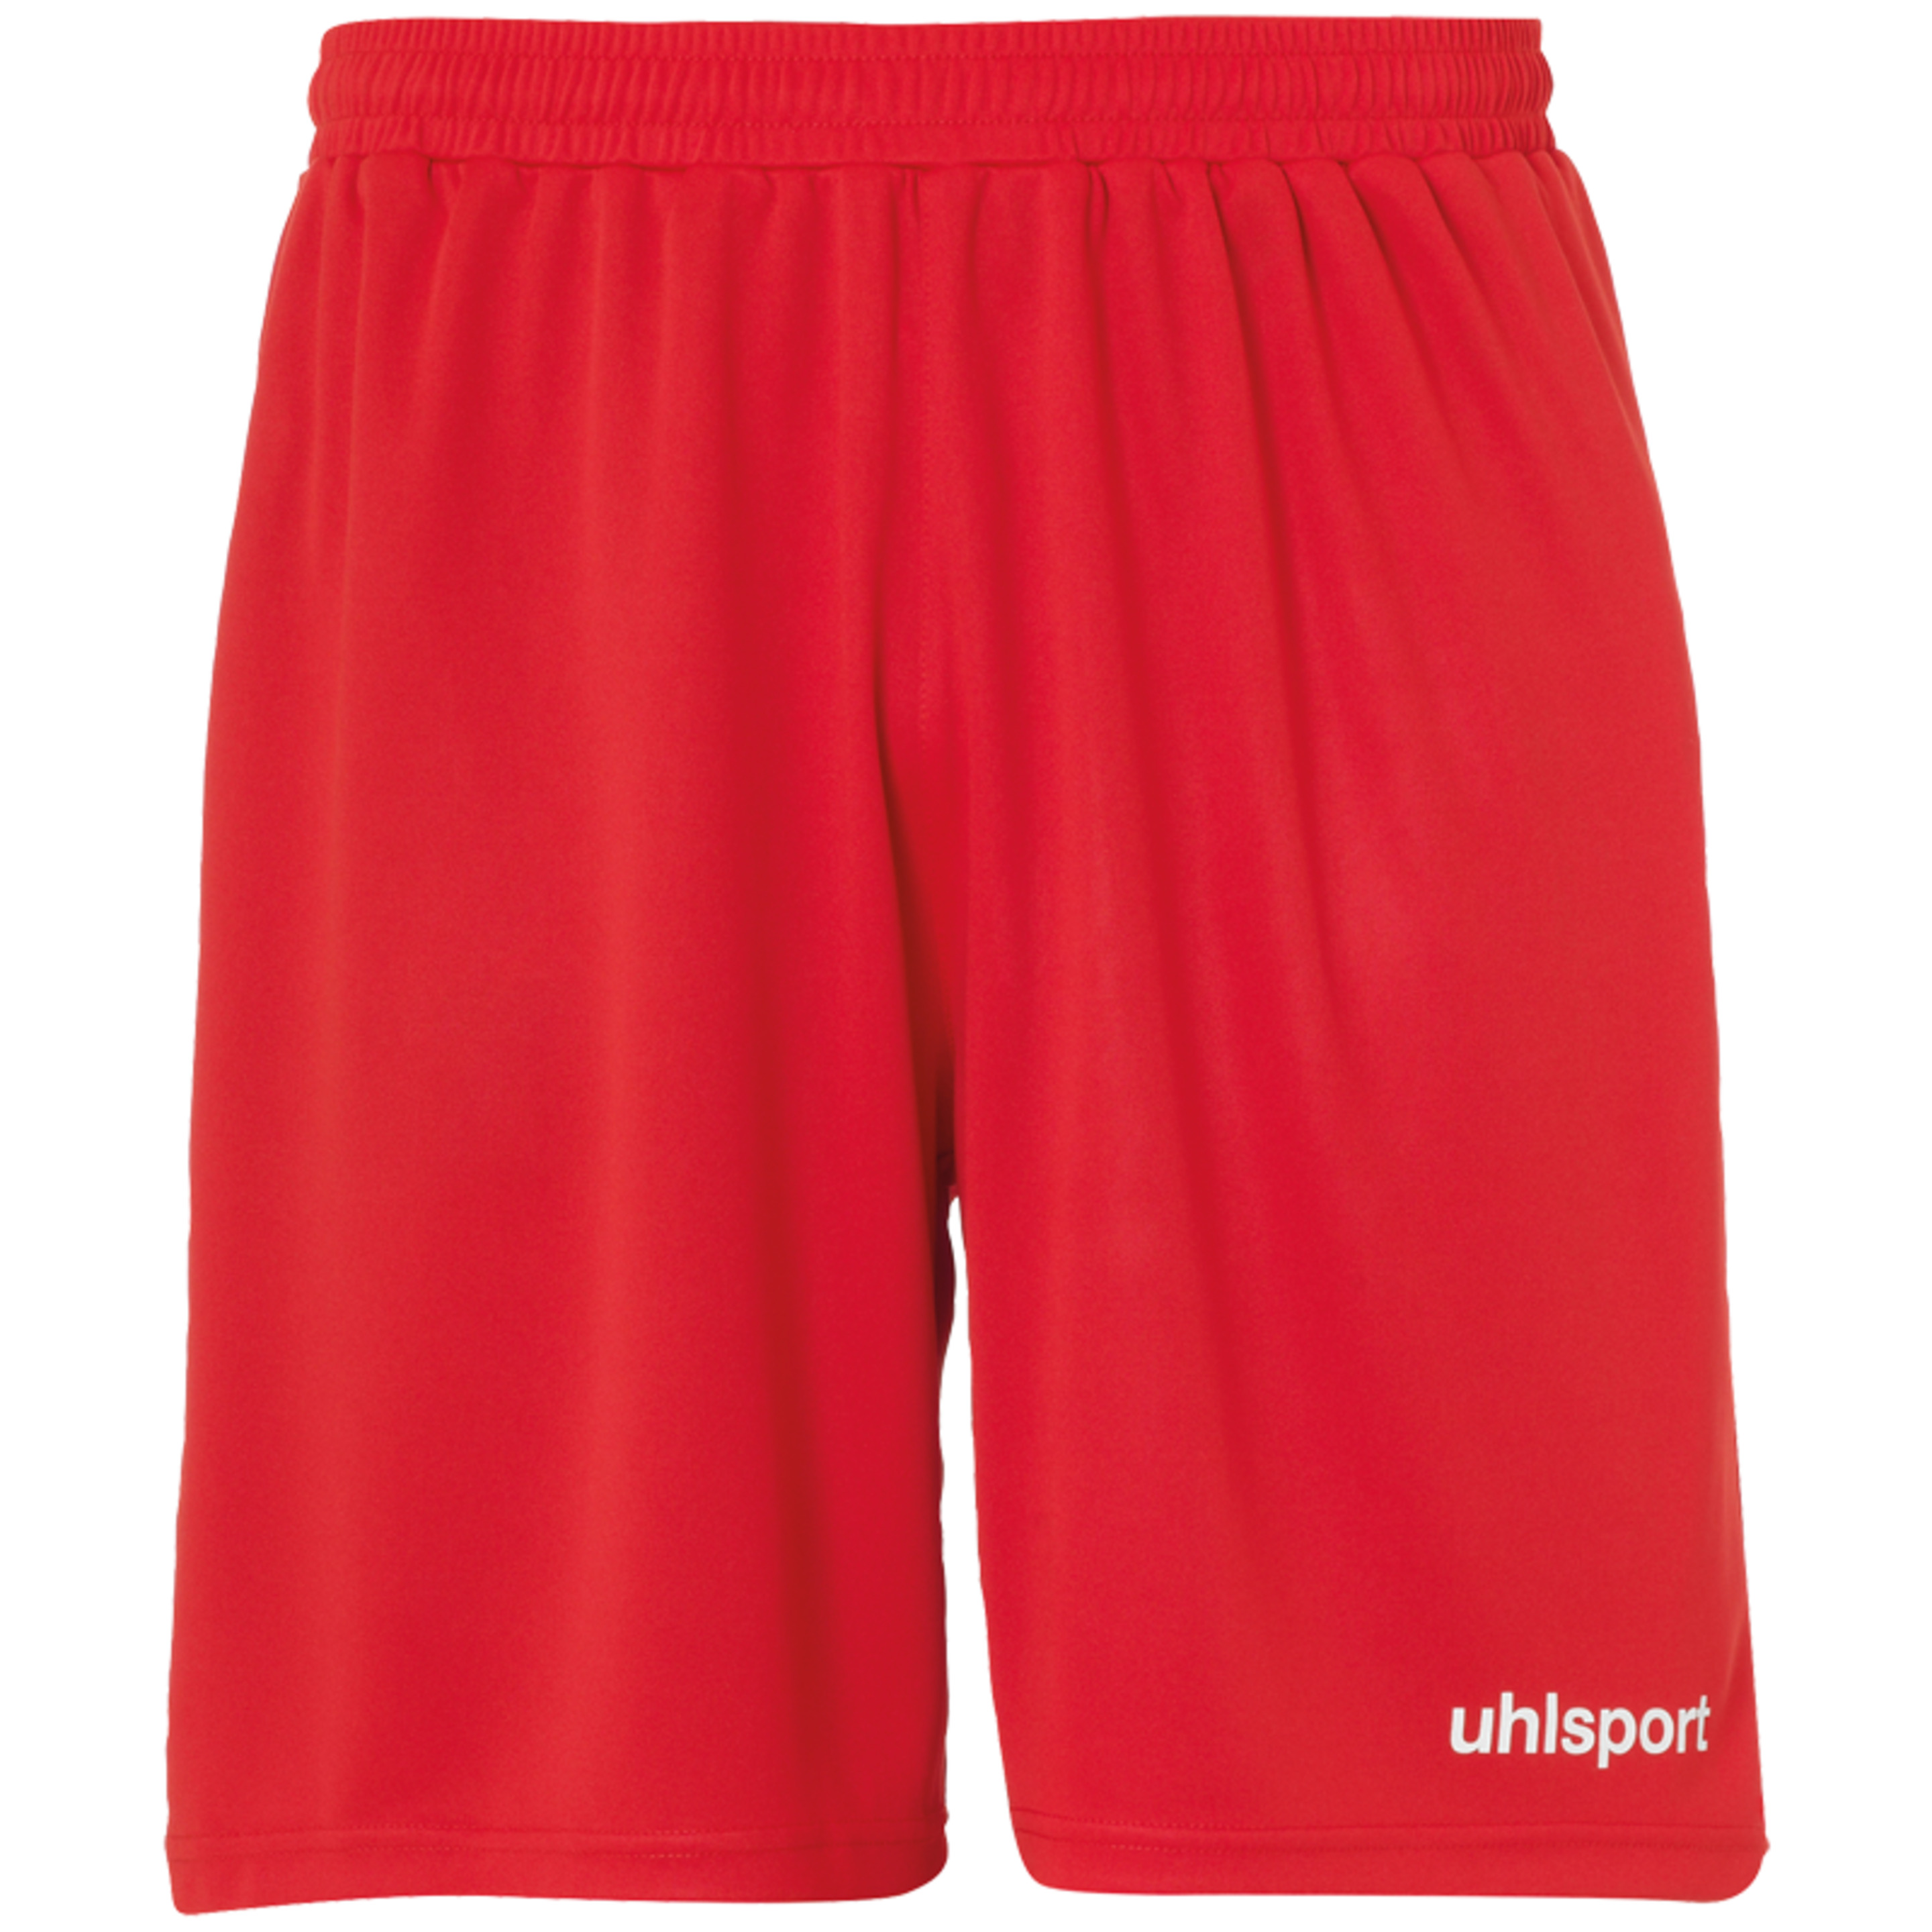 Center Basic Shorts Without Slip Red Uhlsport - rojo - Center Basic Shorts Without Slip Red Uhlsport  MKP